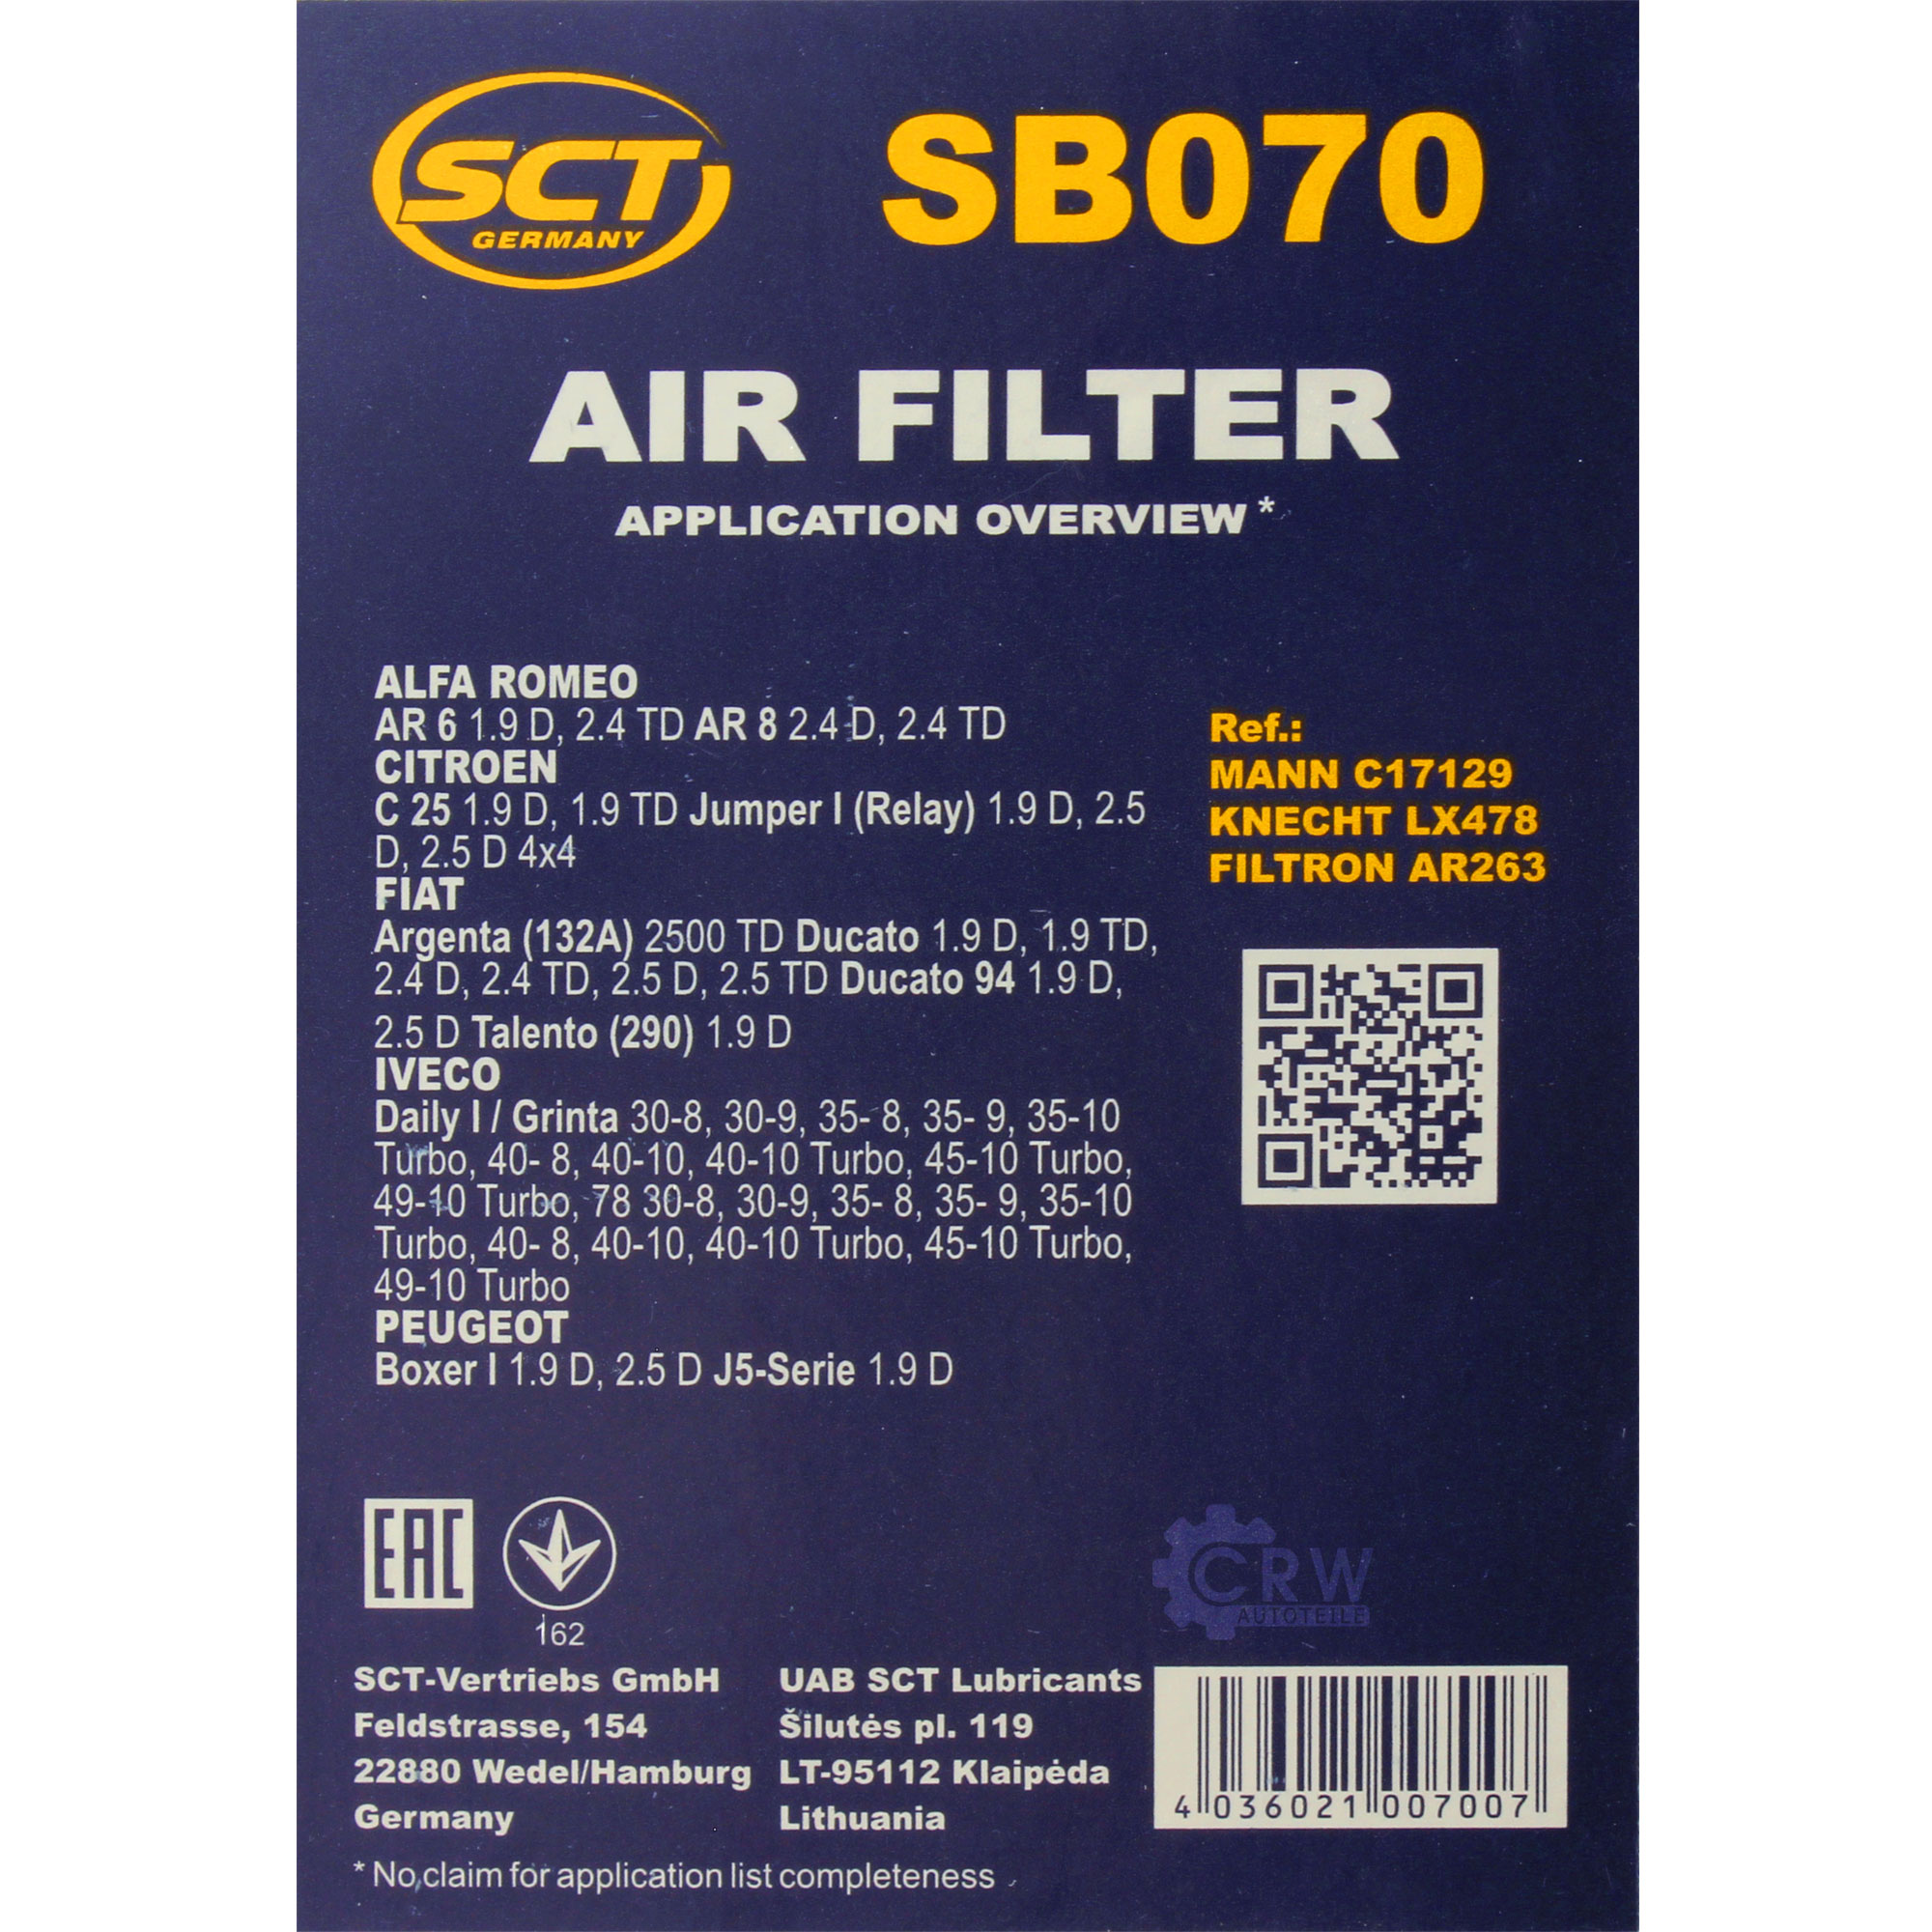 SCT Luftfilter Motorluftfilter SB 070 Air Filter